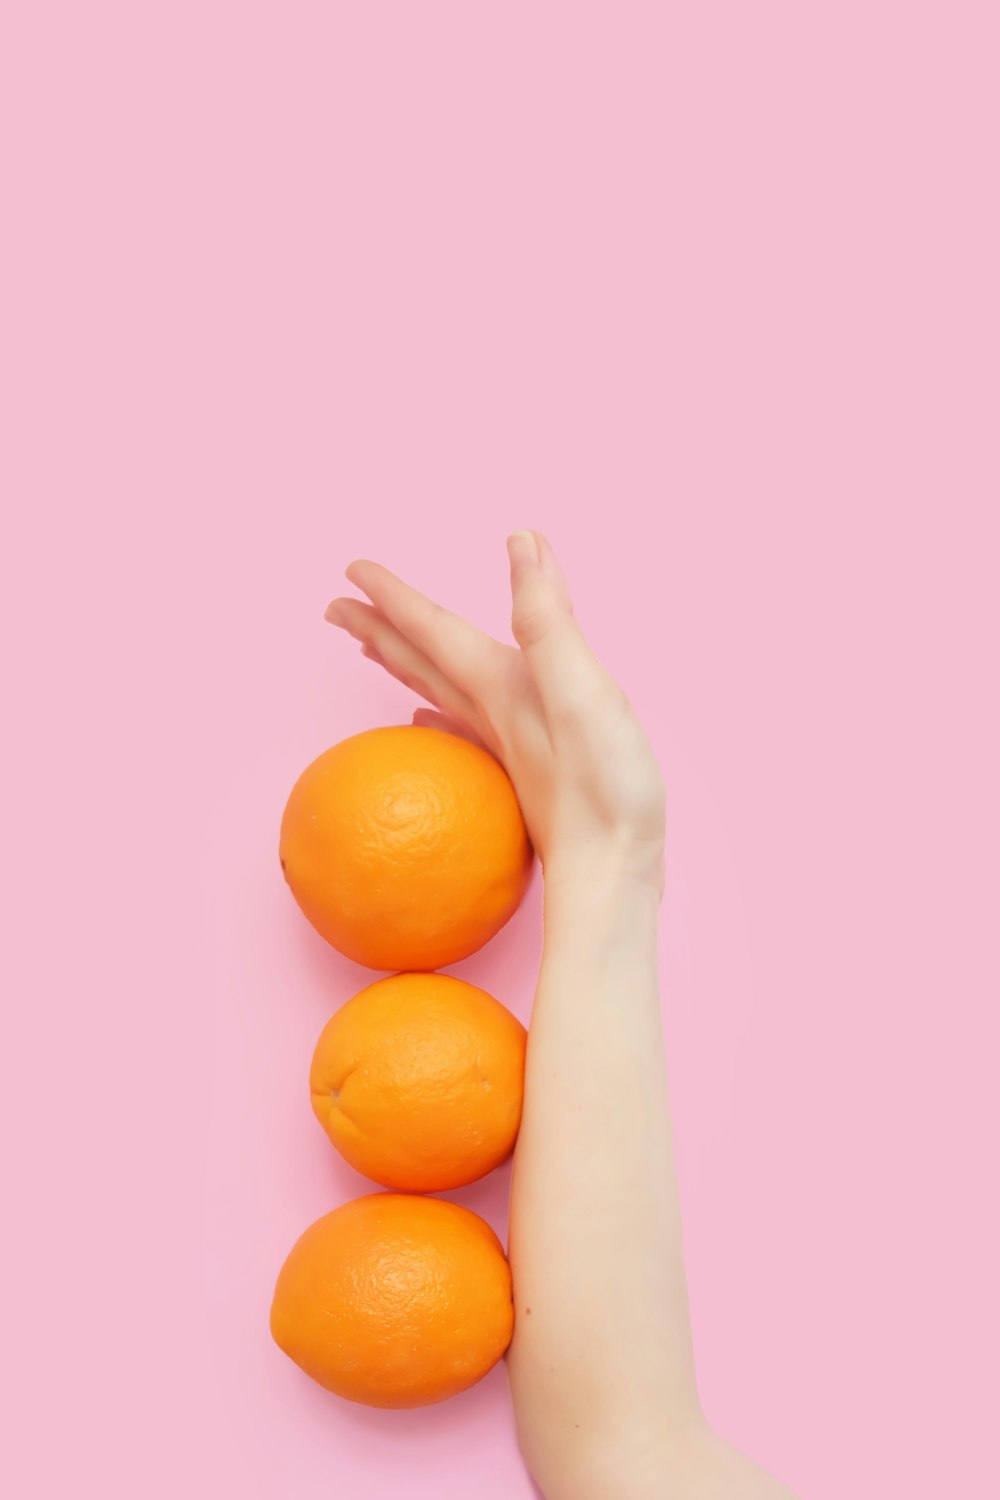 丸いオレンジ色の果実が3つ